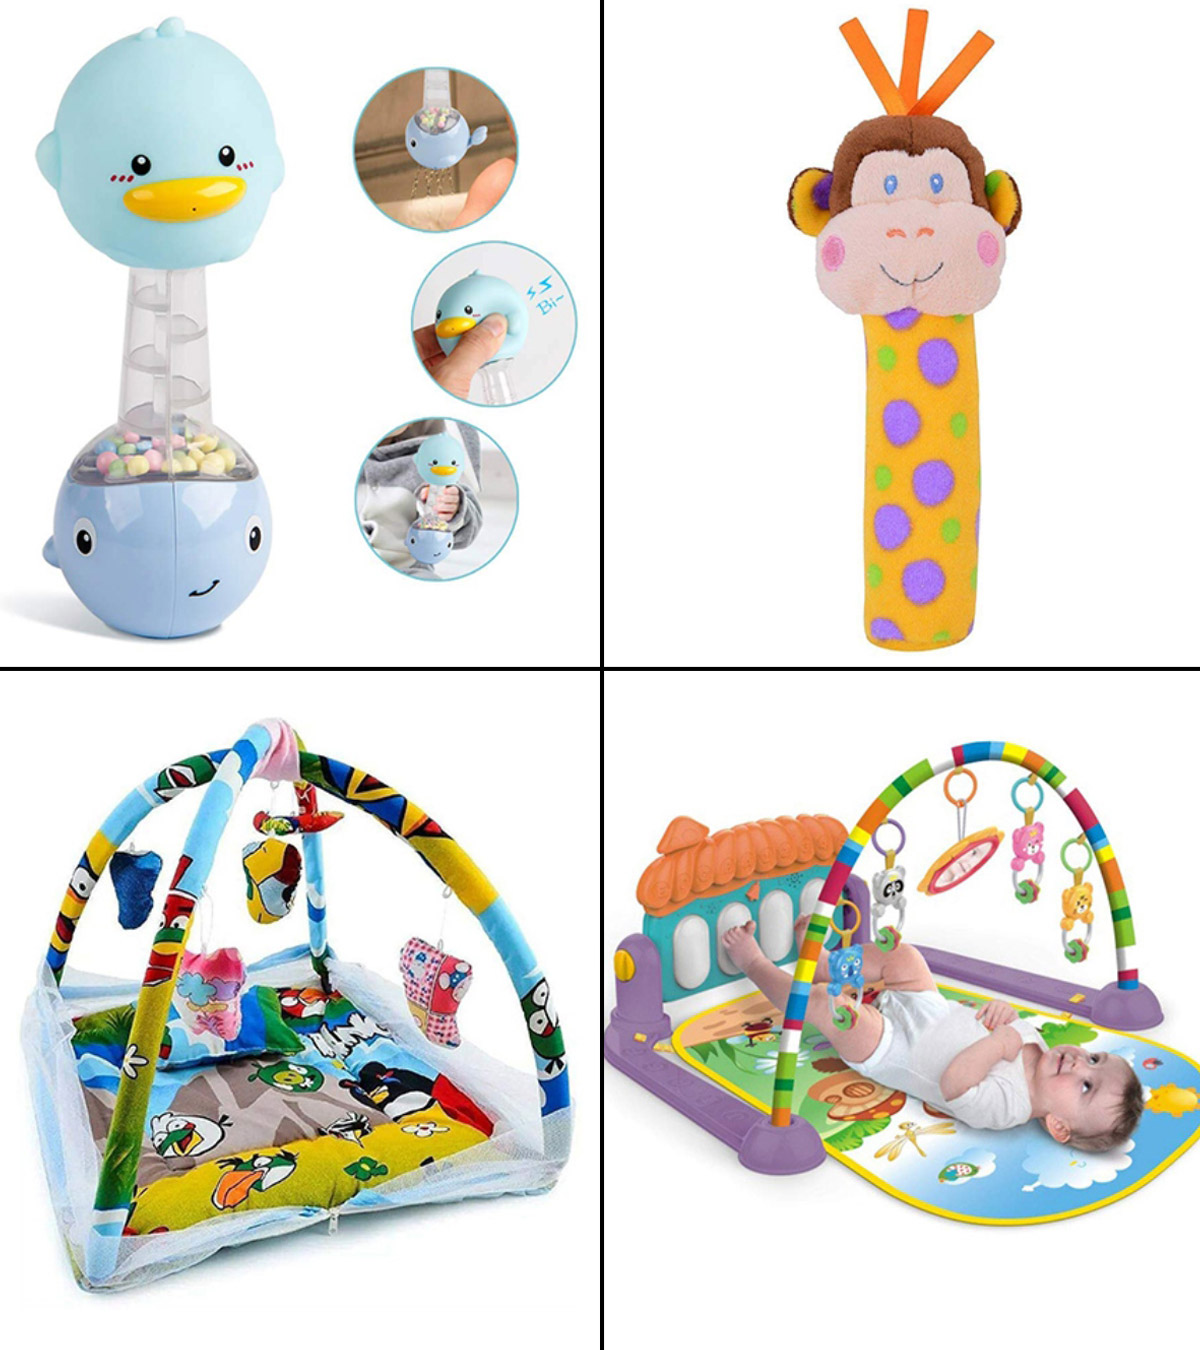 4 महीने के बच्चे के लिए 12 बेहतरीन खिलौने | 4 Months Baby Toys (बेबी टॉयज) To Buy In 2020